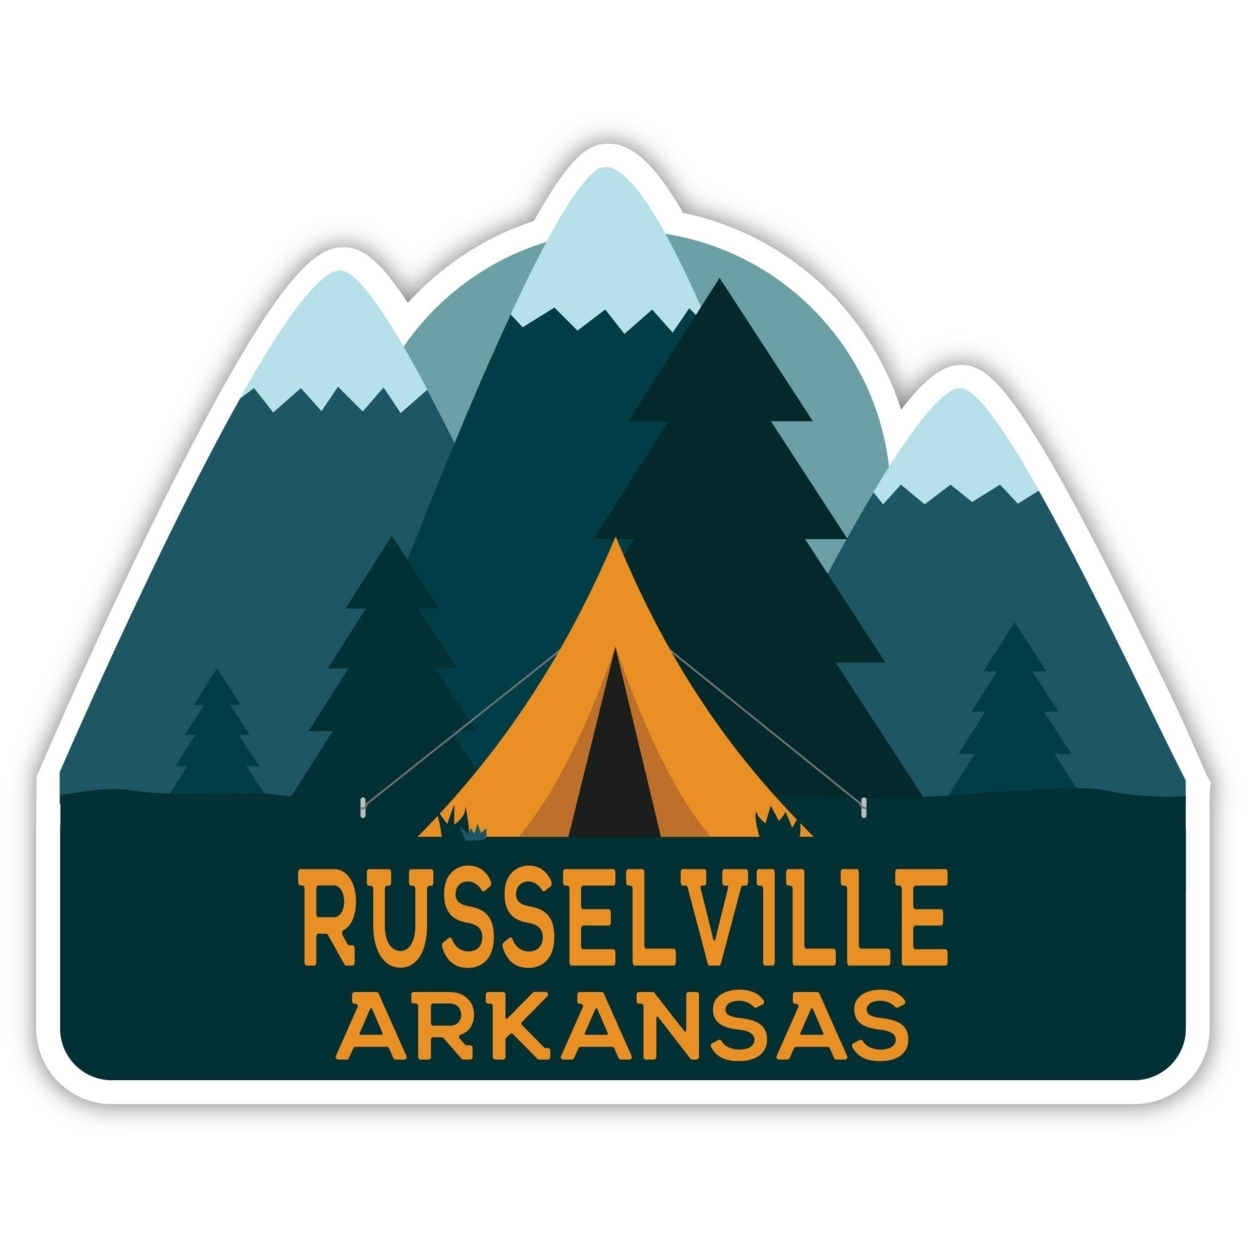 Russelville Arkansas Souvenir Decorative Stickers (Choose Theme And Size) - Single Unit, 2-Inch, Tent